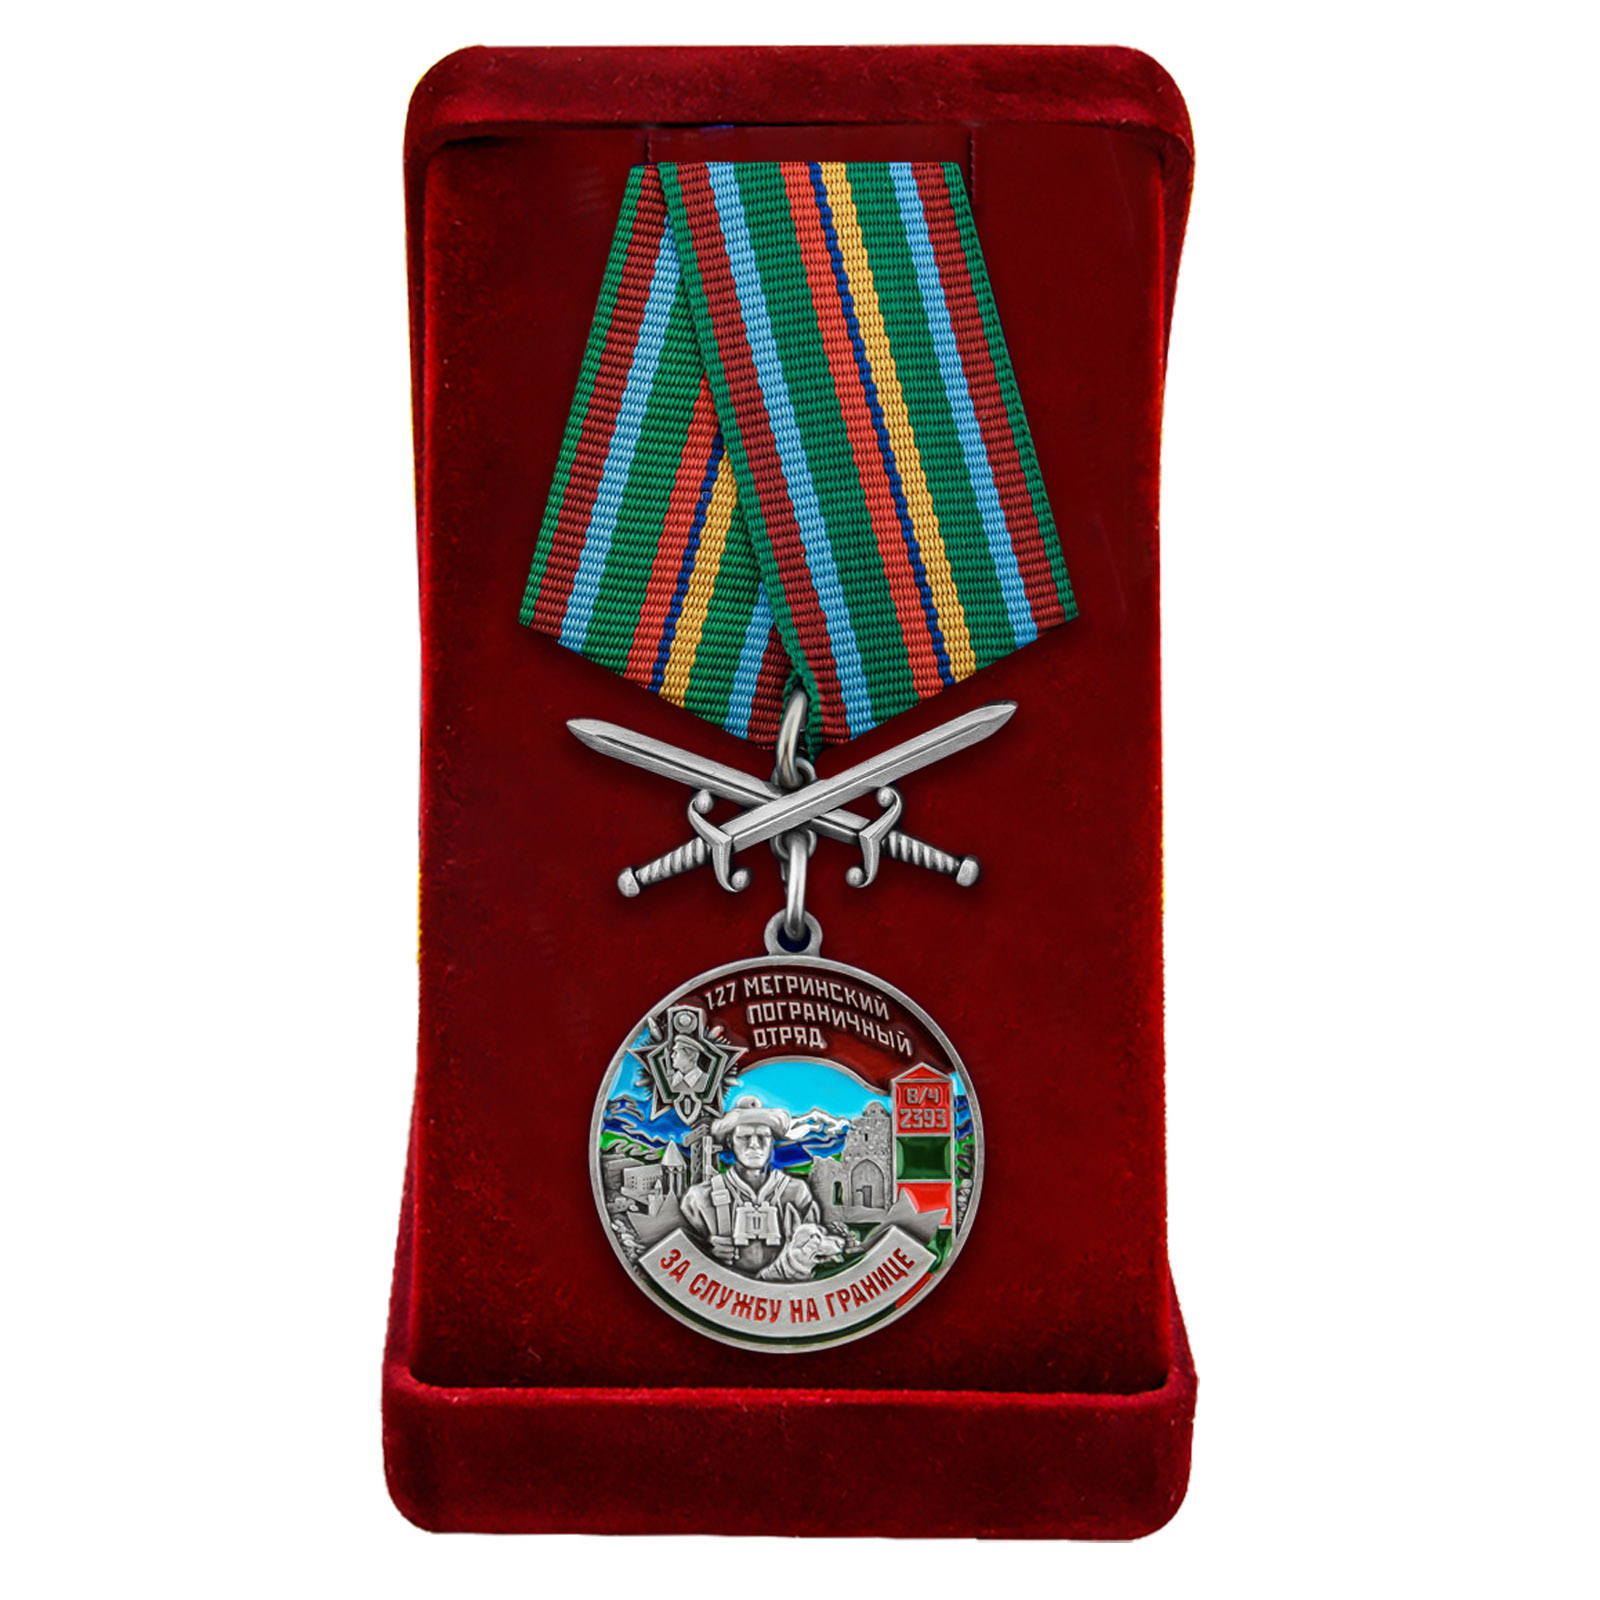 Купить медаль "За службу в Мегринском погранотряде" в бархатистом футляре